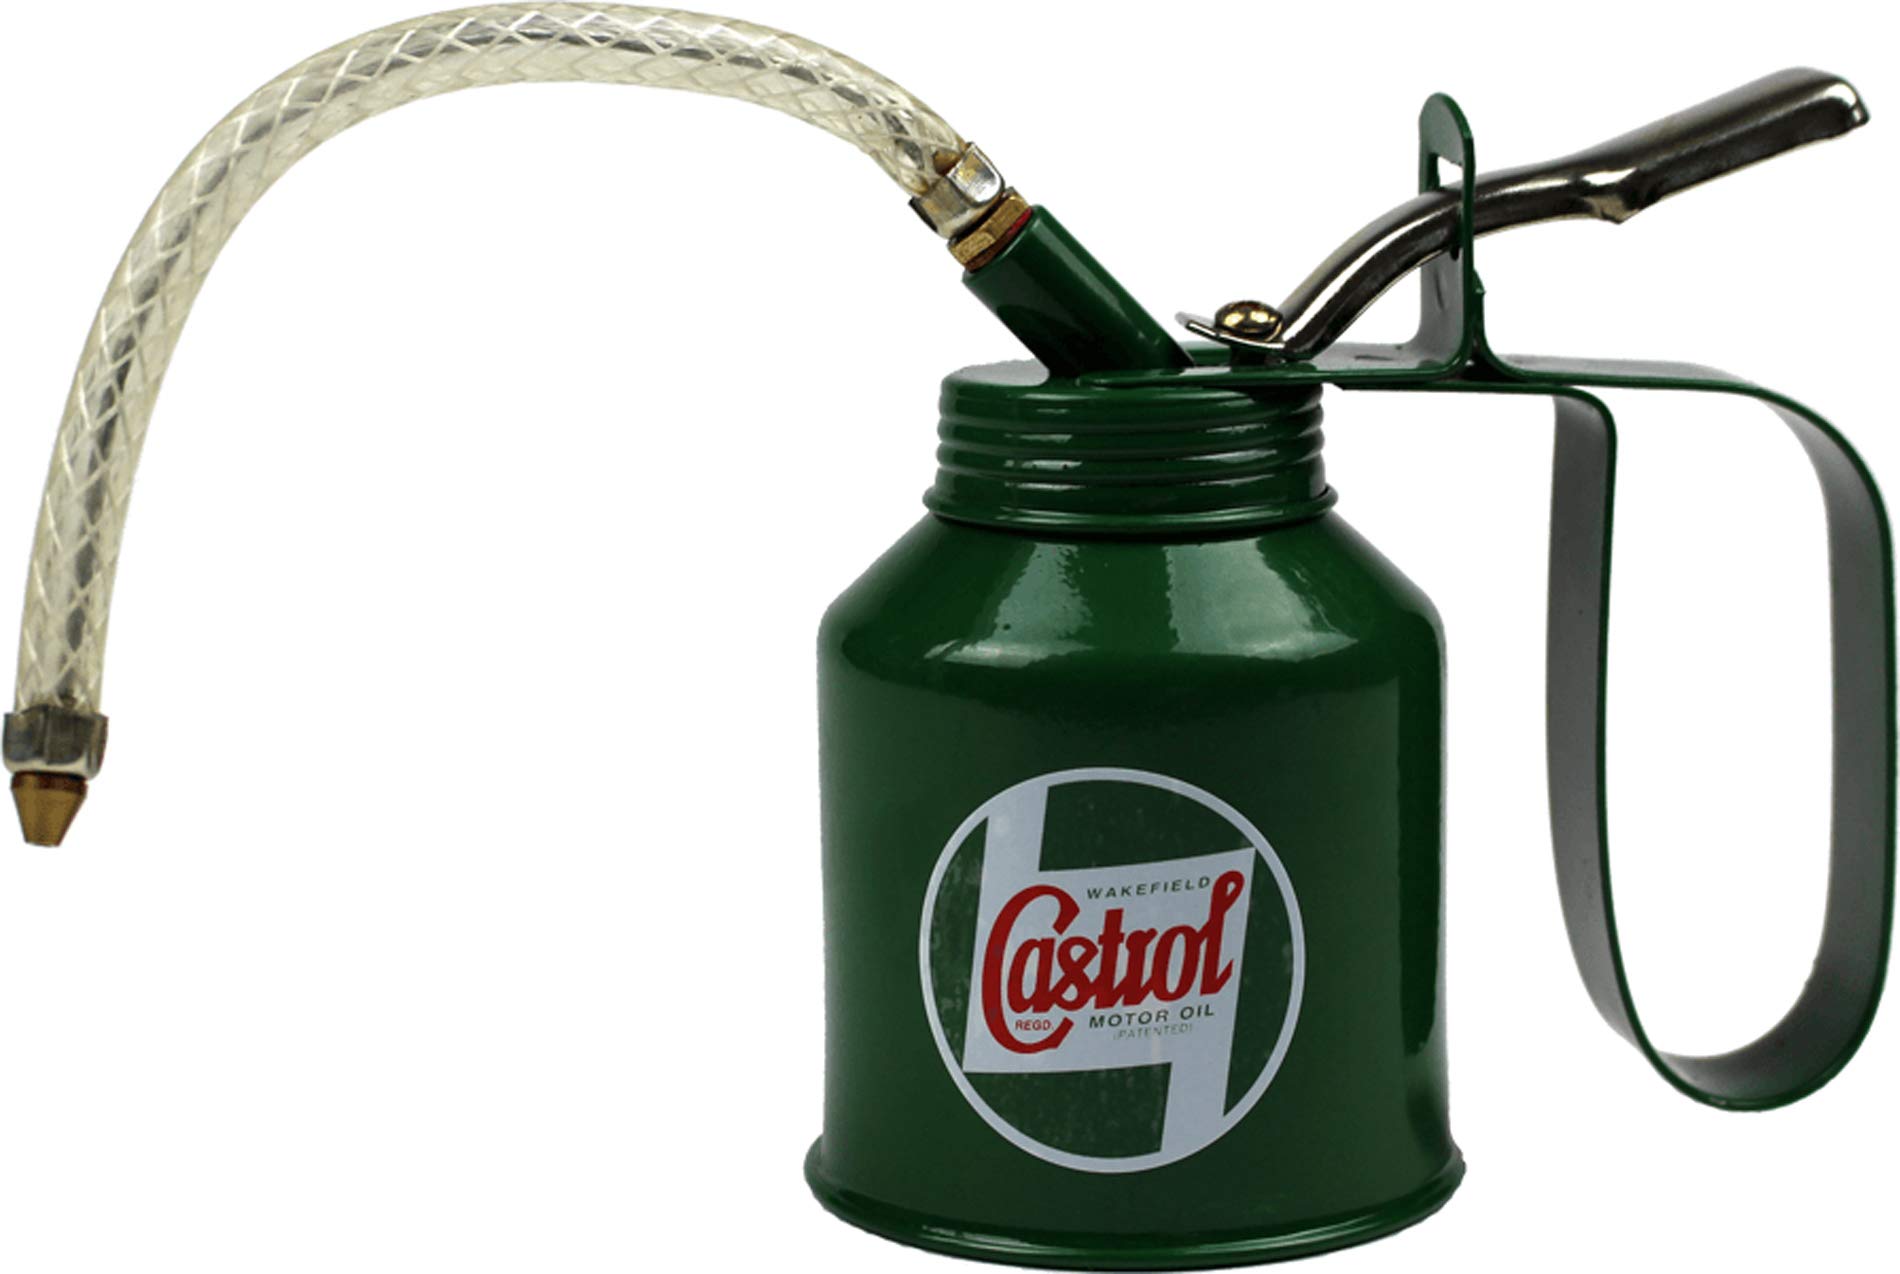 Castrol Ölpumpe im klassischen Vintage-Stil, 500 ml von Castrol